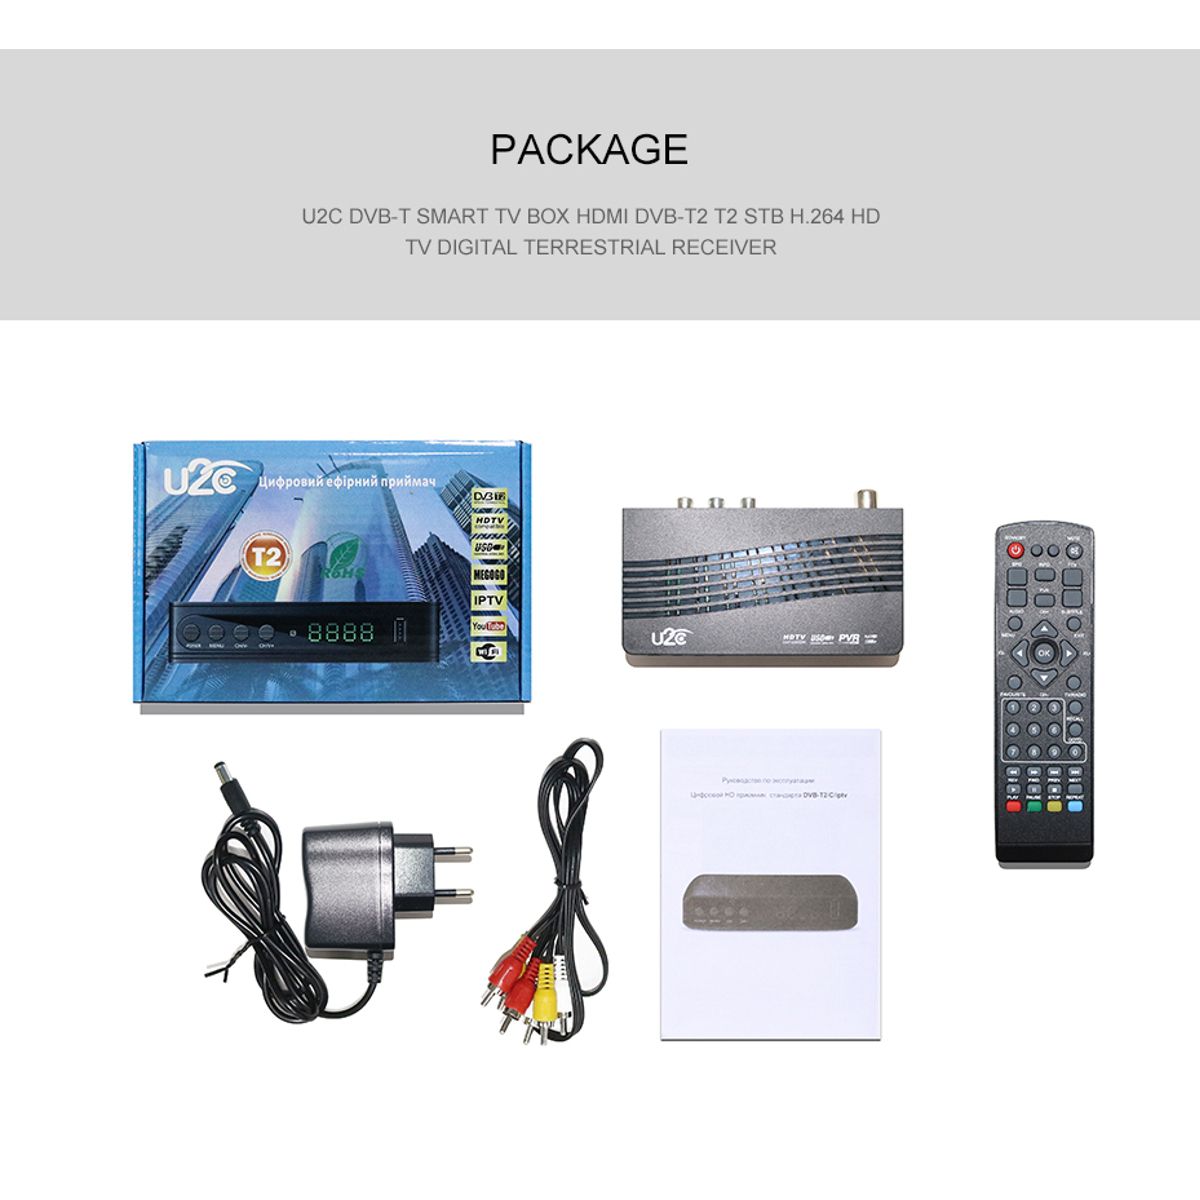 DVB-T2-115-MINI-1080P-Full-HD-USB-Wifi-Digital-TV-Set-Top-Box-Receiver-Support-IPTV-1635116